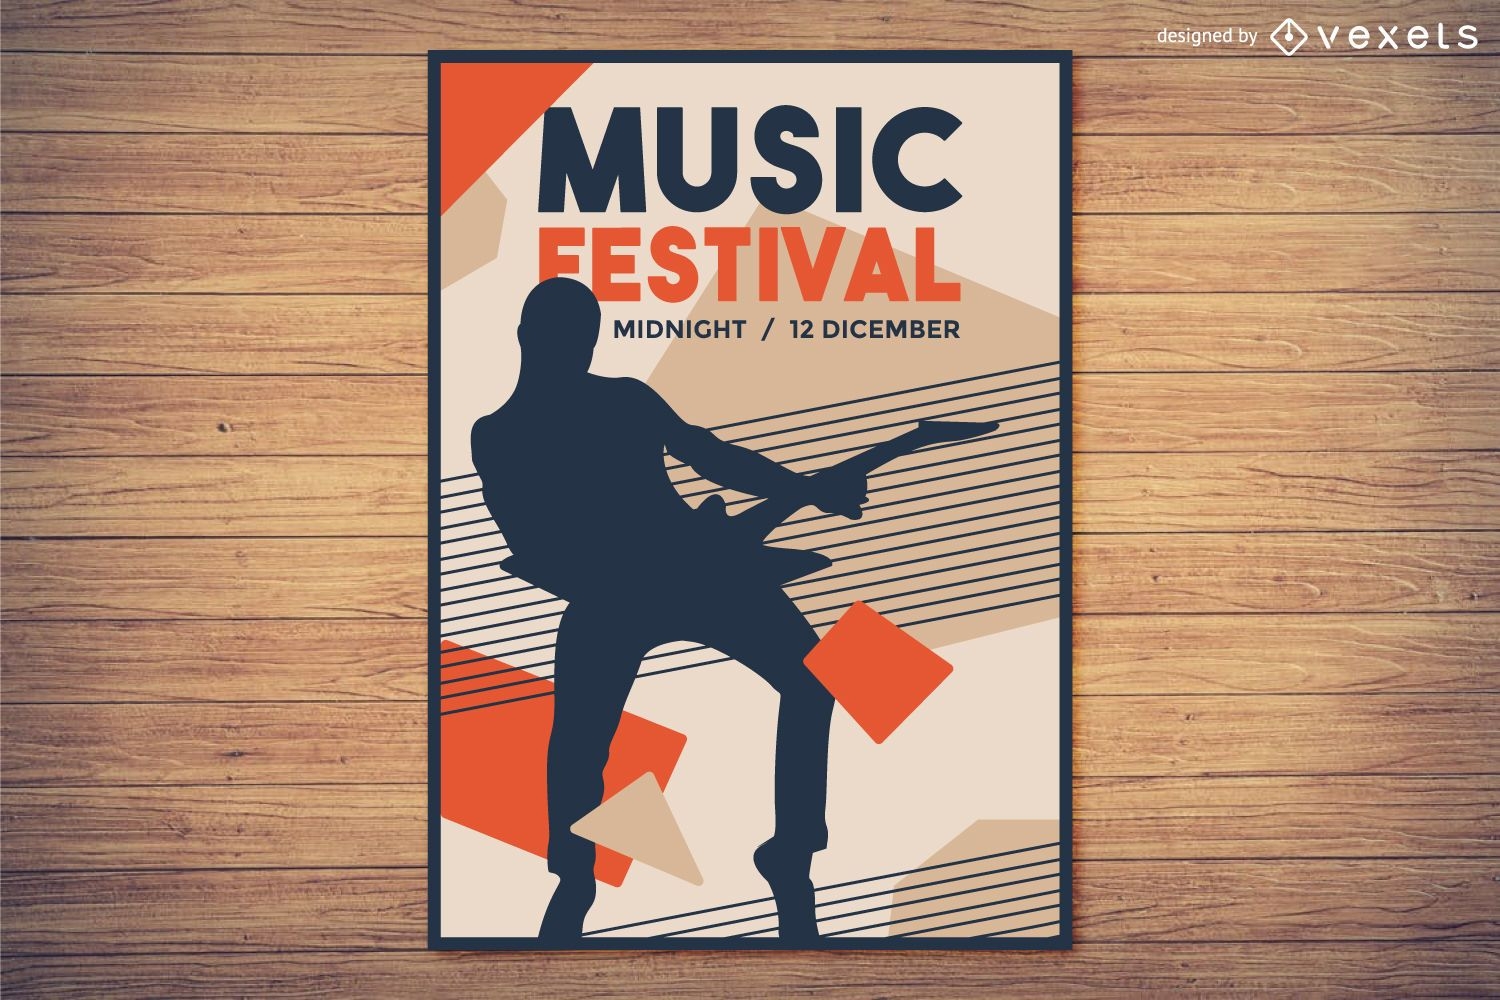 Musikfestivalplakatdesign mit Silhouette